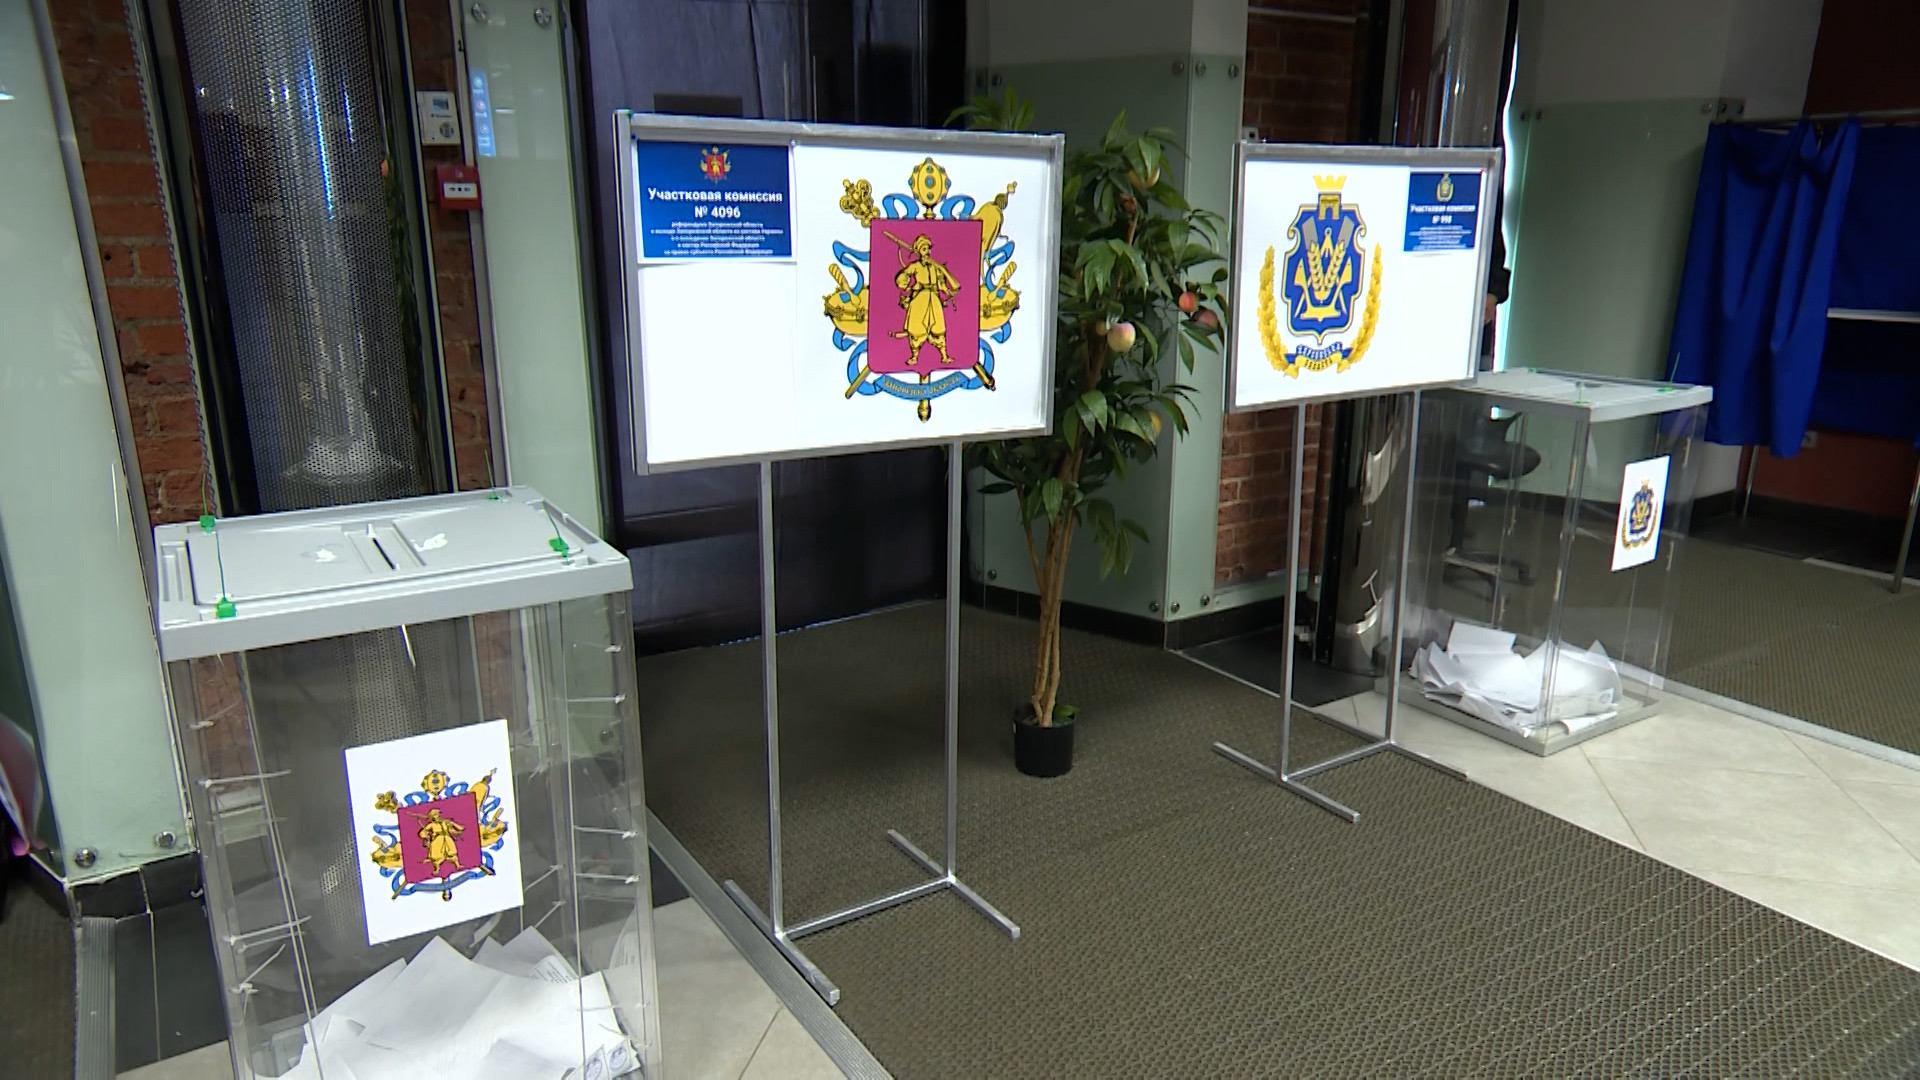 Пункт голосования по референдуму в Невском районе Санкт-Петербурга. Референдумы наблюдатели